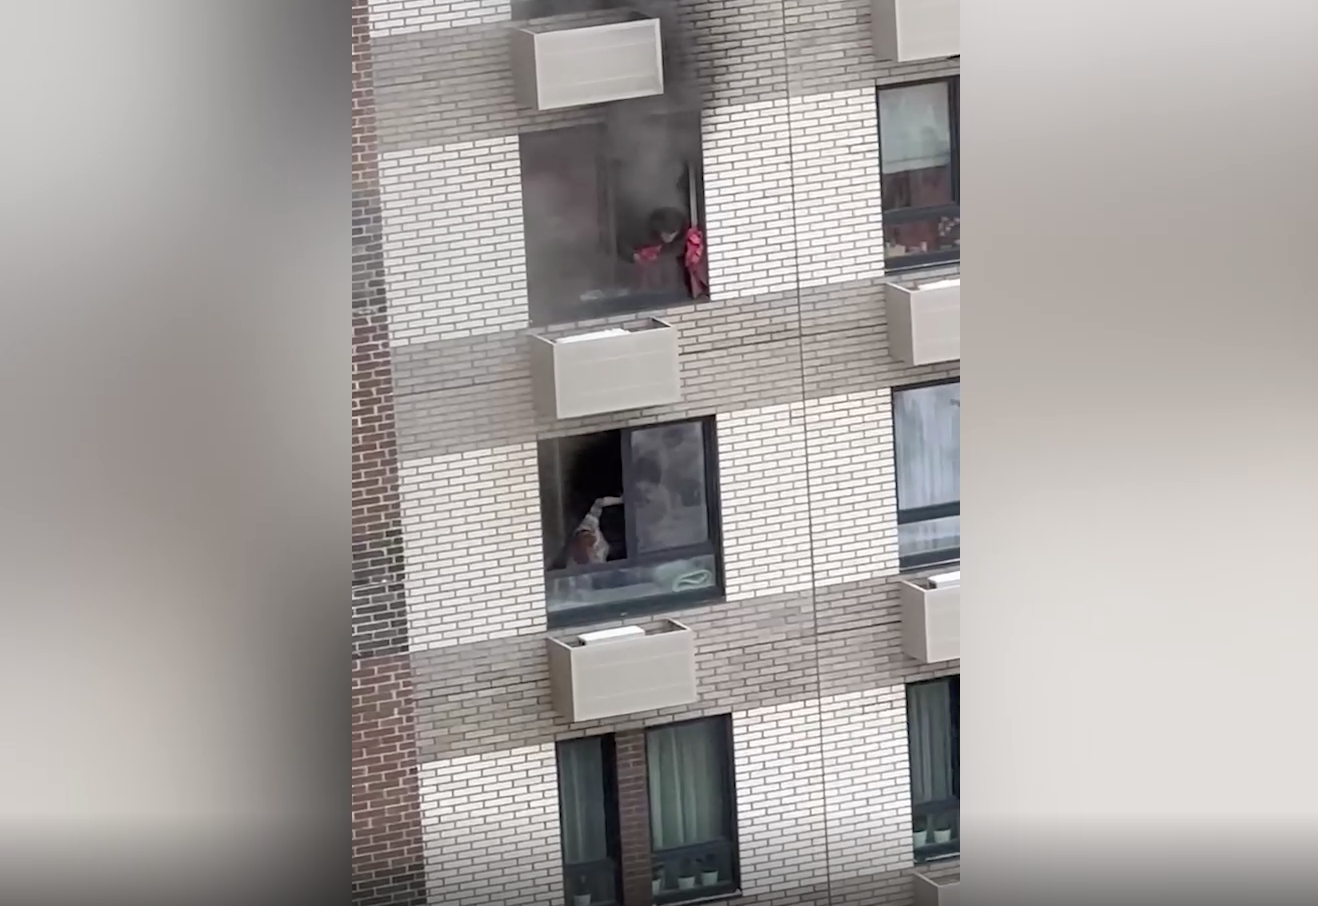 Квартира полыхает на 23-м этаже высотки в Москве, жильцы молят о помощи из окна